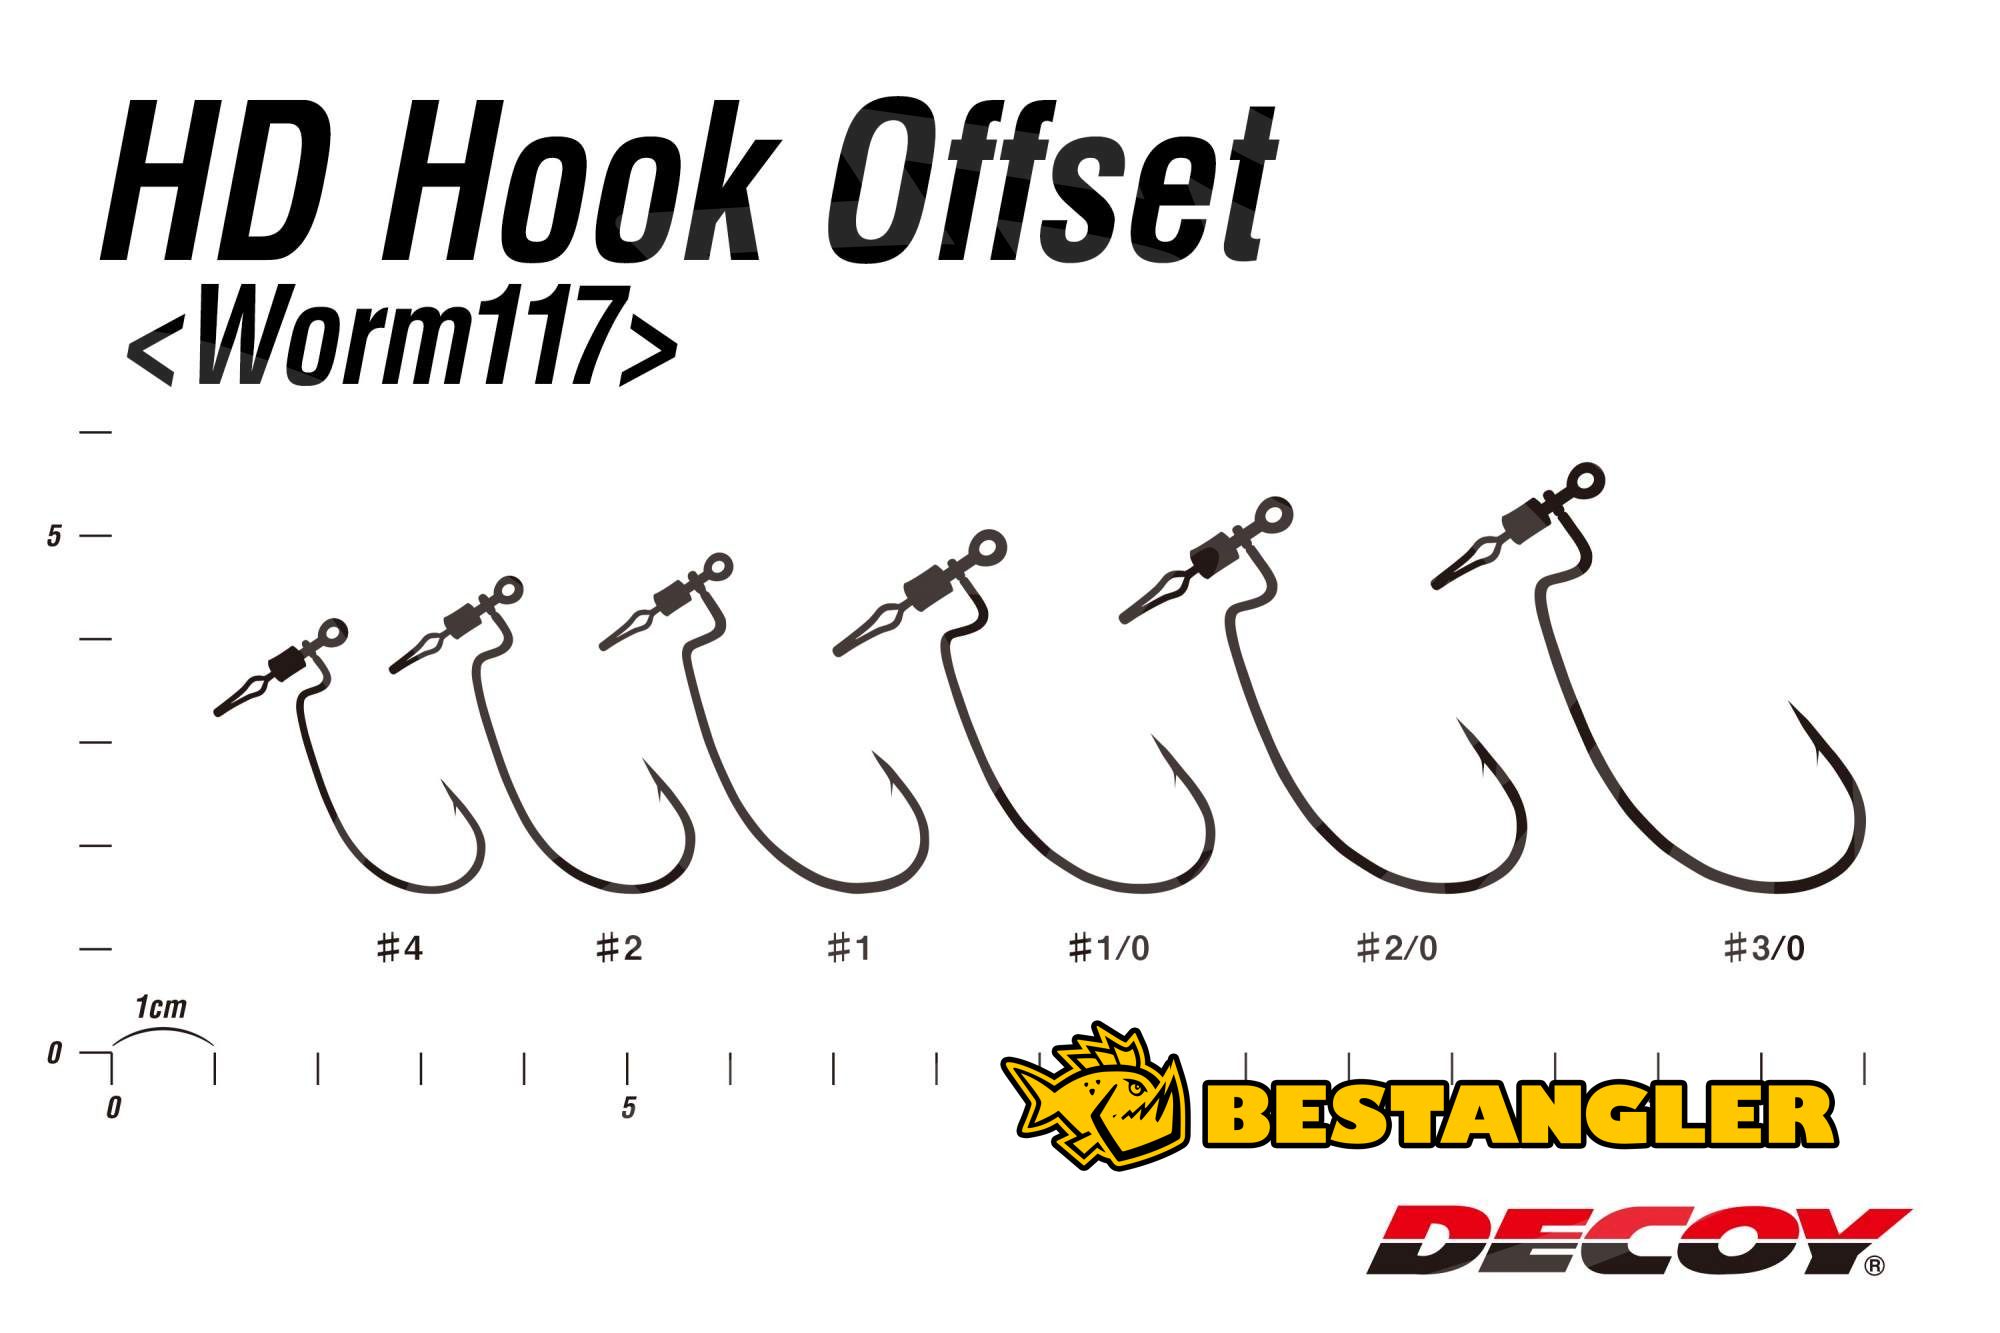 DECOY Worm 117 HD Hook Offset #3/0